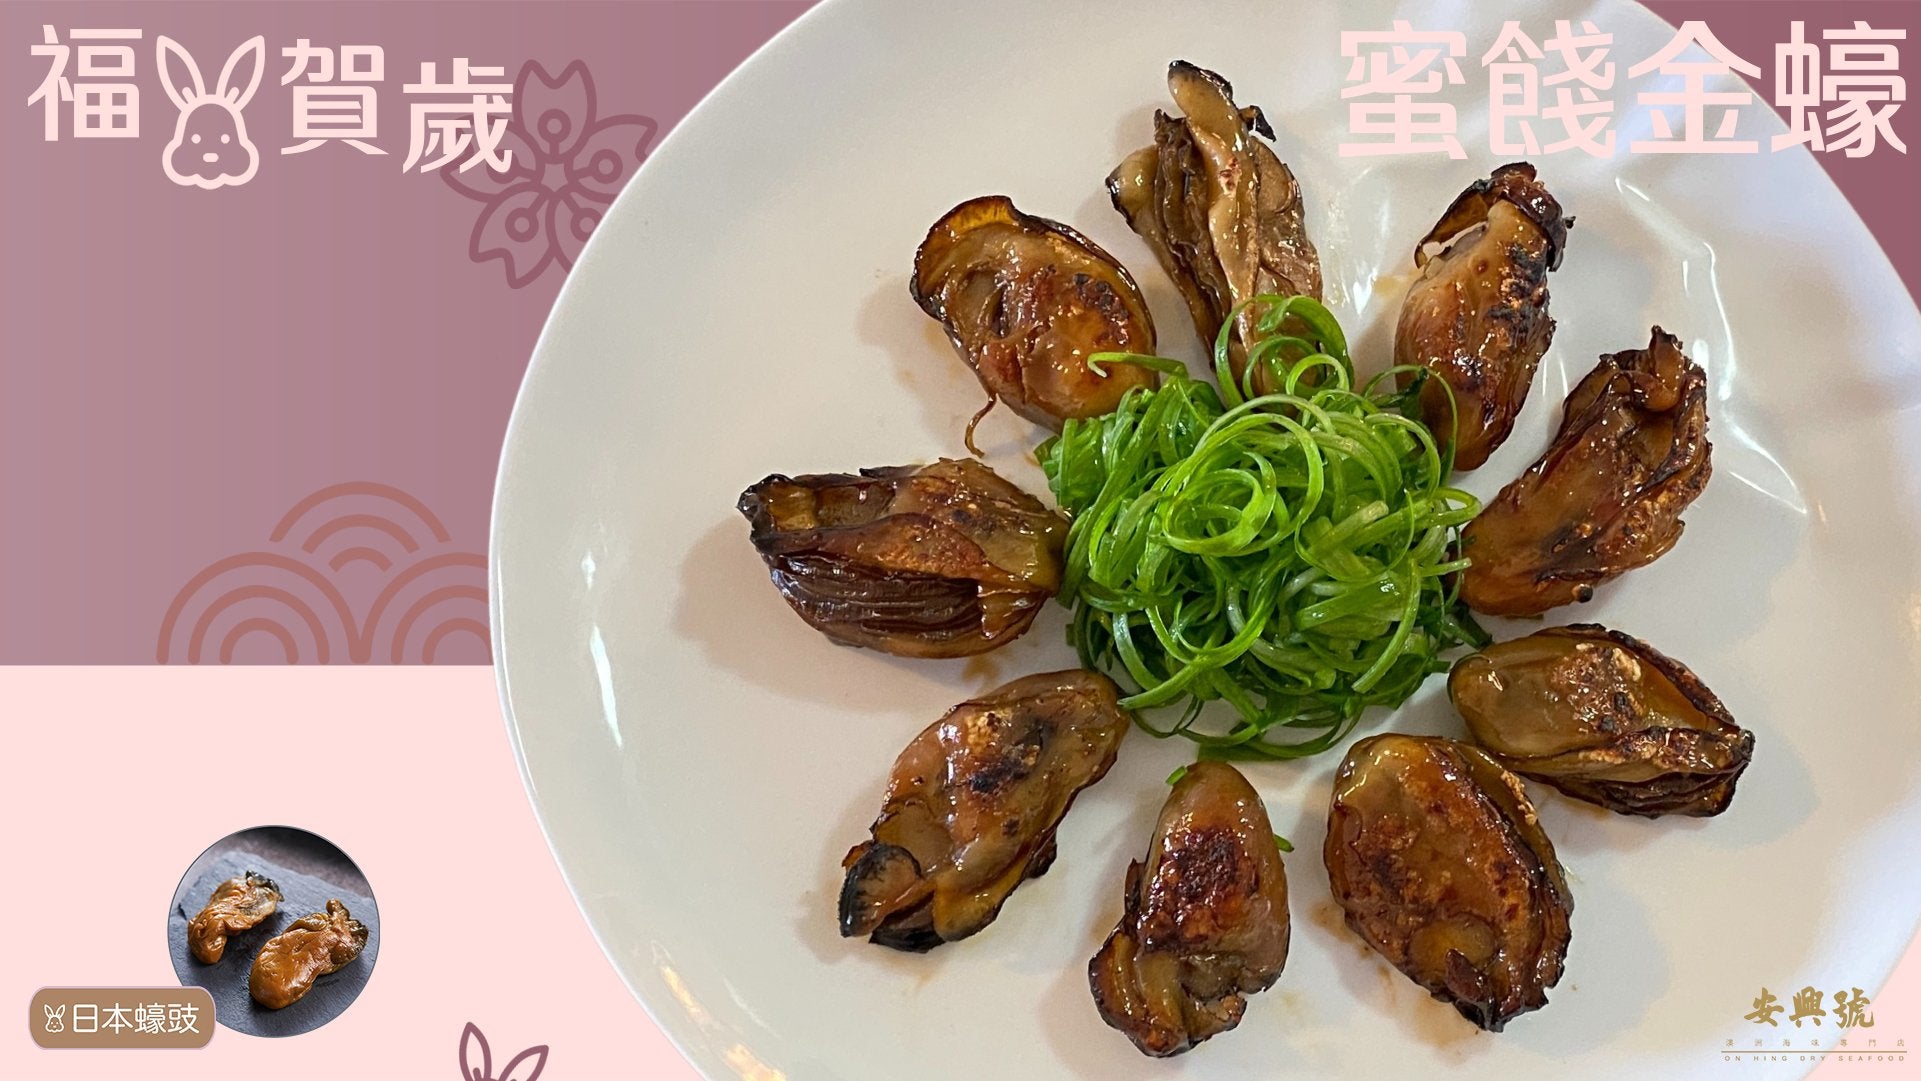 賀年菜 蜜餞金蠔 蜜汁煎蠔豉(3-5人份) - On Hing Dry Seafood